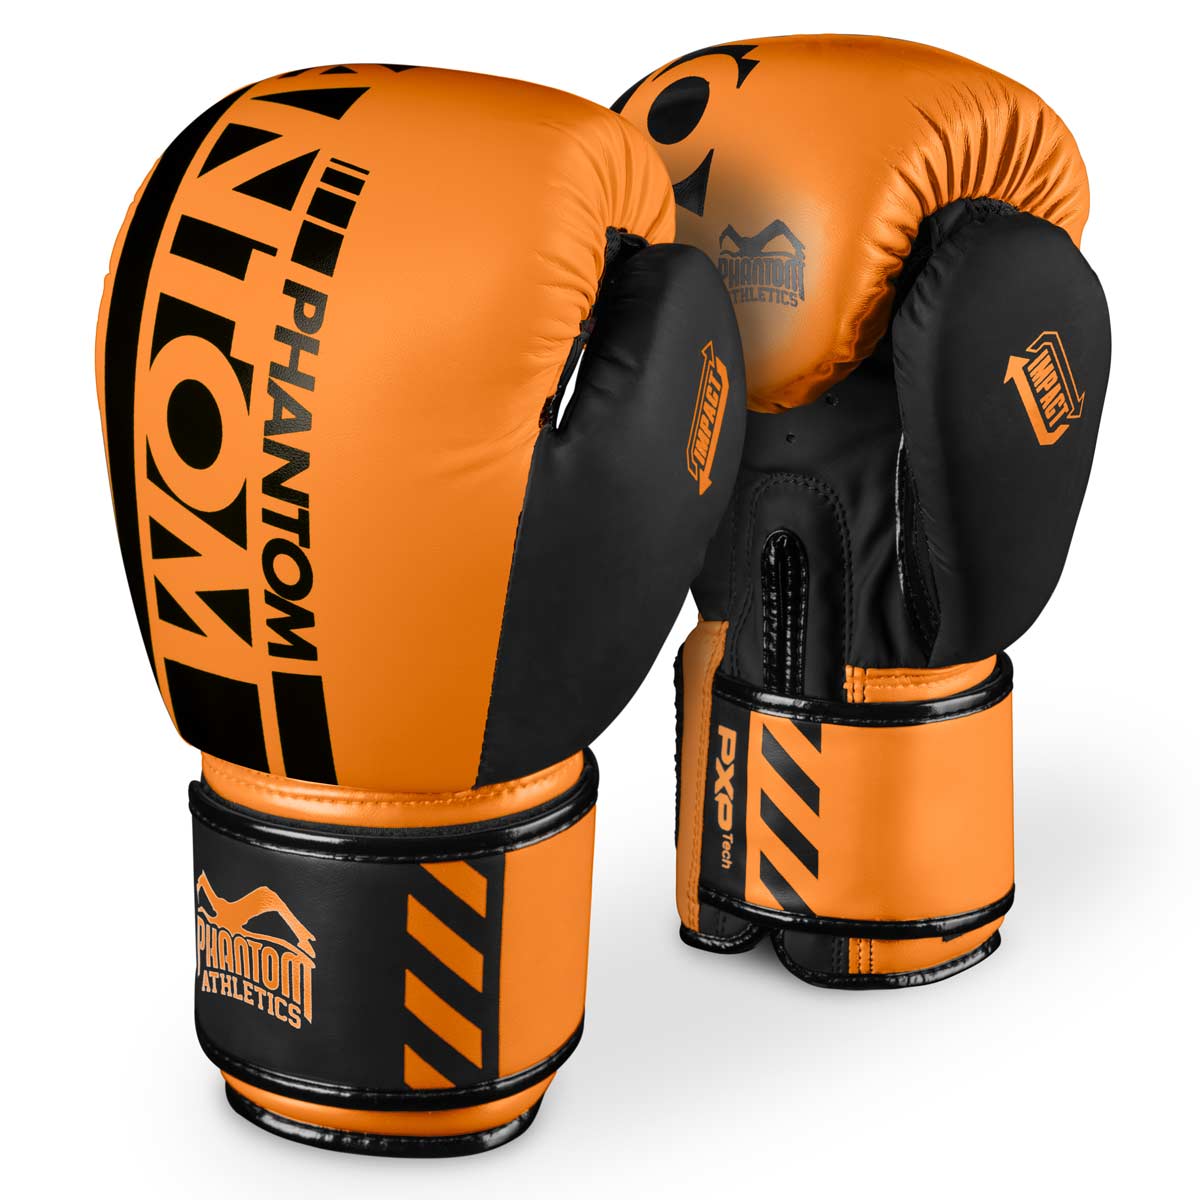 Phantom APEX NEON Boxhandschuhe. Hochwertige Boxing Gloves für deinen Kampfsport. Perfekte Verarbeitung machen diese Boxhandschuhe ideal für Training, Sparring und Wettkampf. Ideal für MMA, Muay Thai, Boxen und Kickboxen. Hier in Neon Orange.